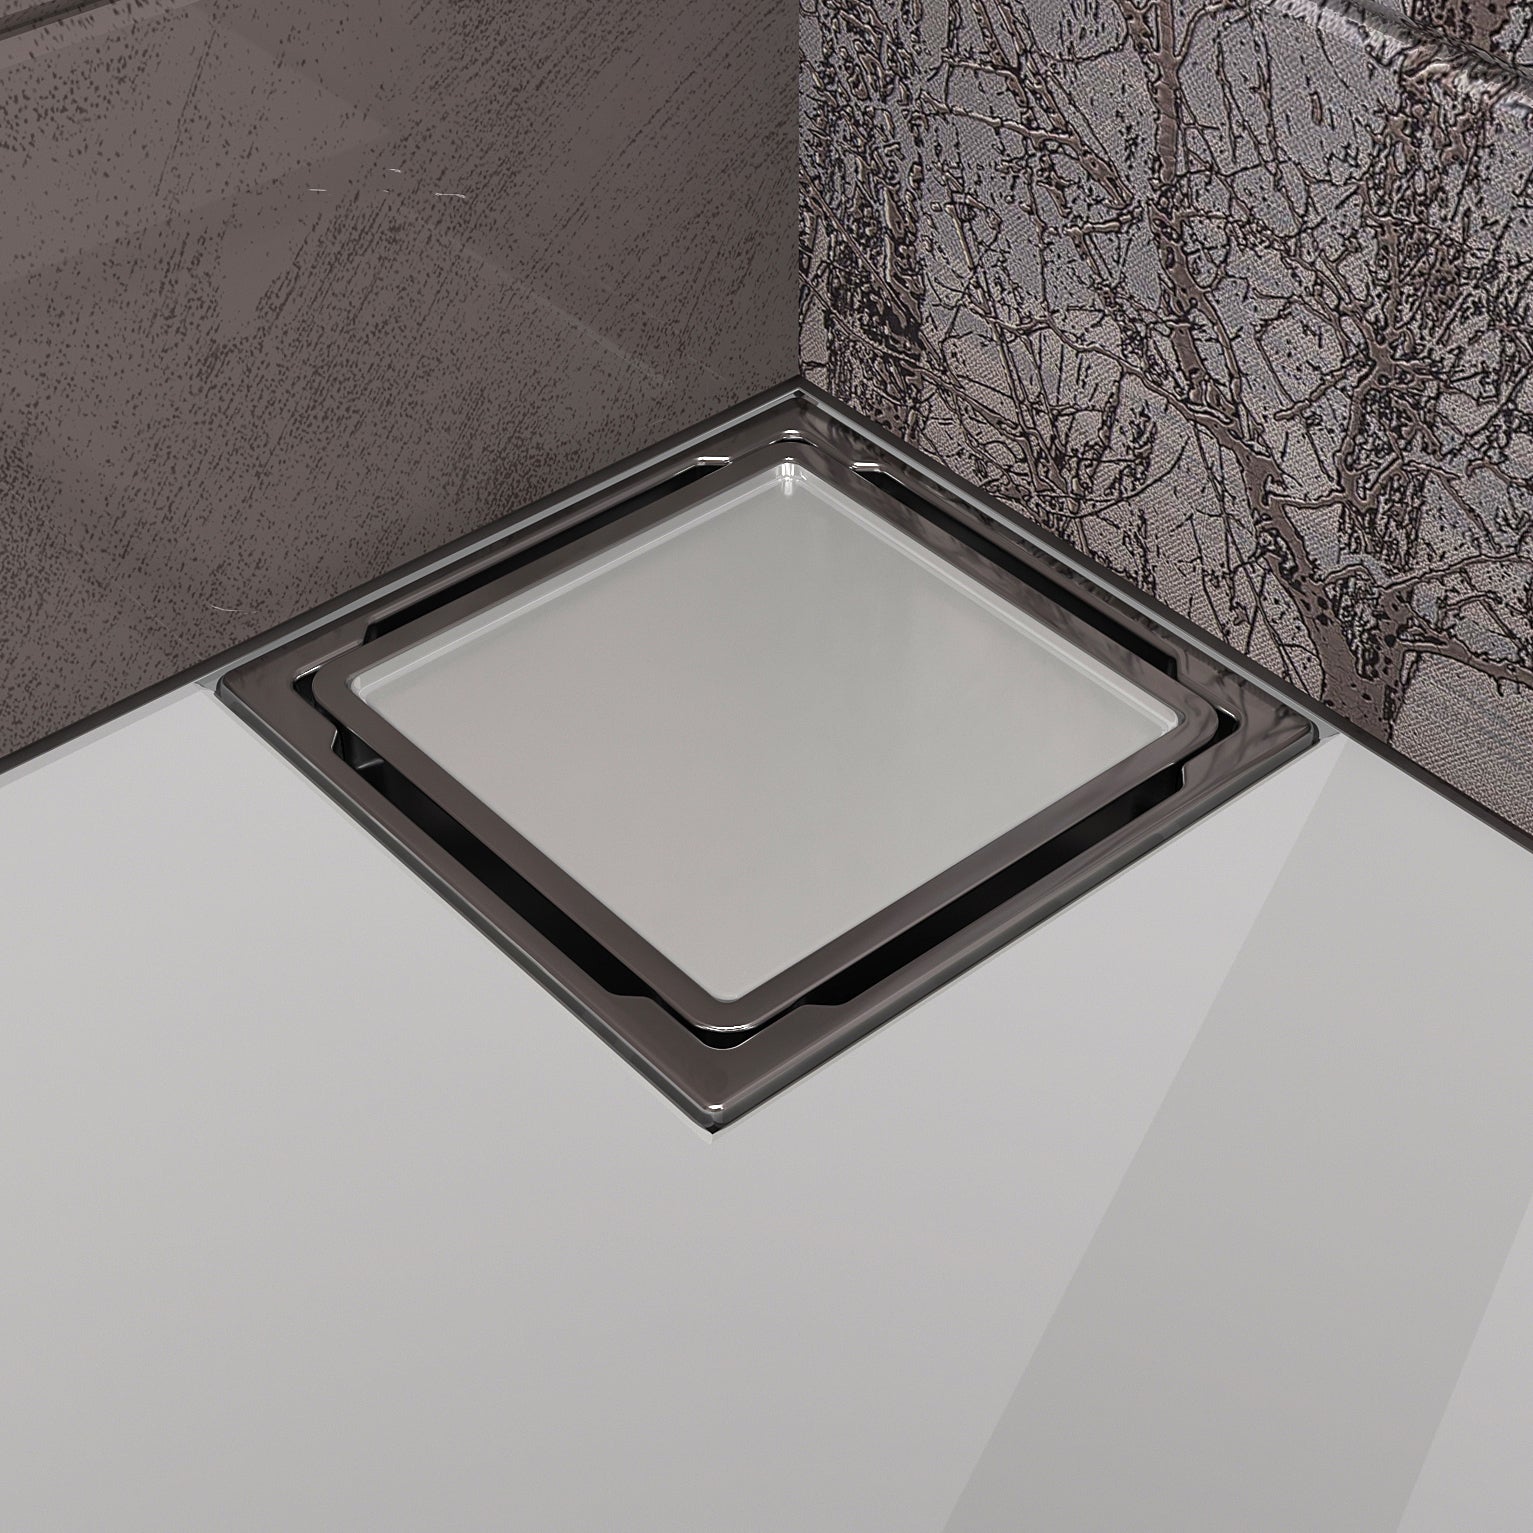 Bodenablauf flach mit Abdeckung aus gehärtetem Glas "WEISS", Edelstahlrahmen 110x110 mm